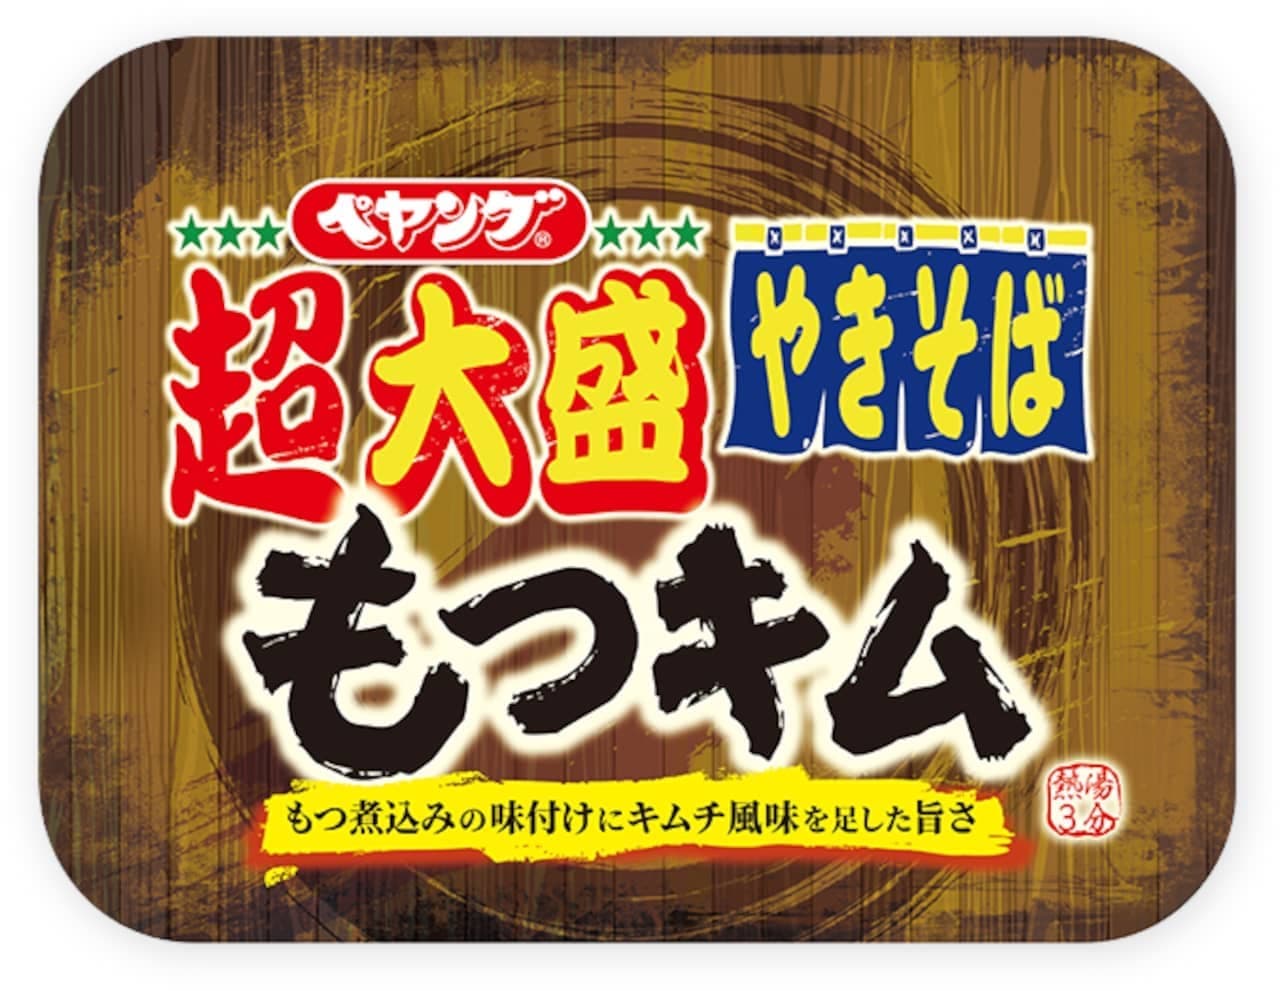 Maruka Foods "Peyoung Super Densheng Motsu Kim Yakisoba" (Peyoung Super Densheng Motsu Kim Yakisoba)